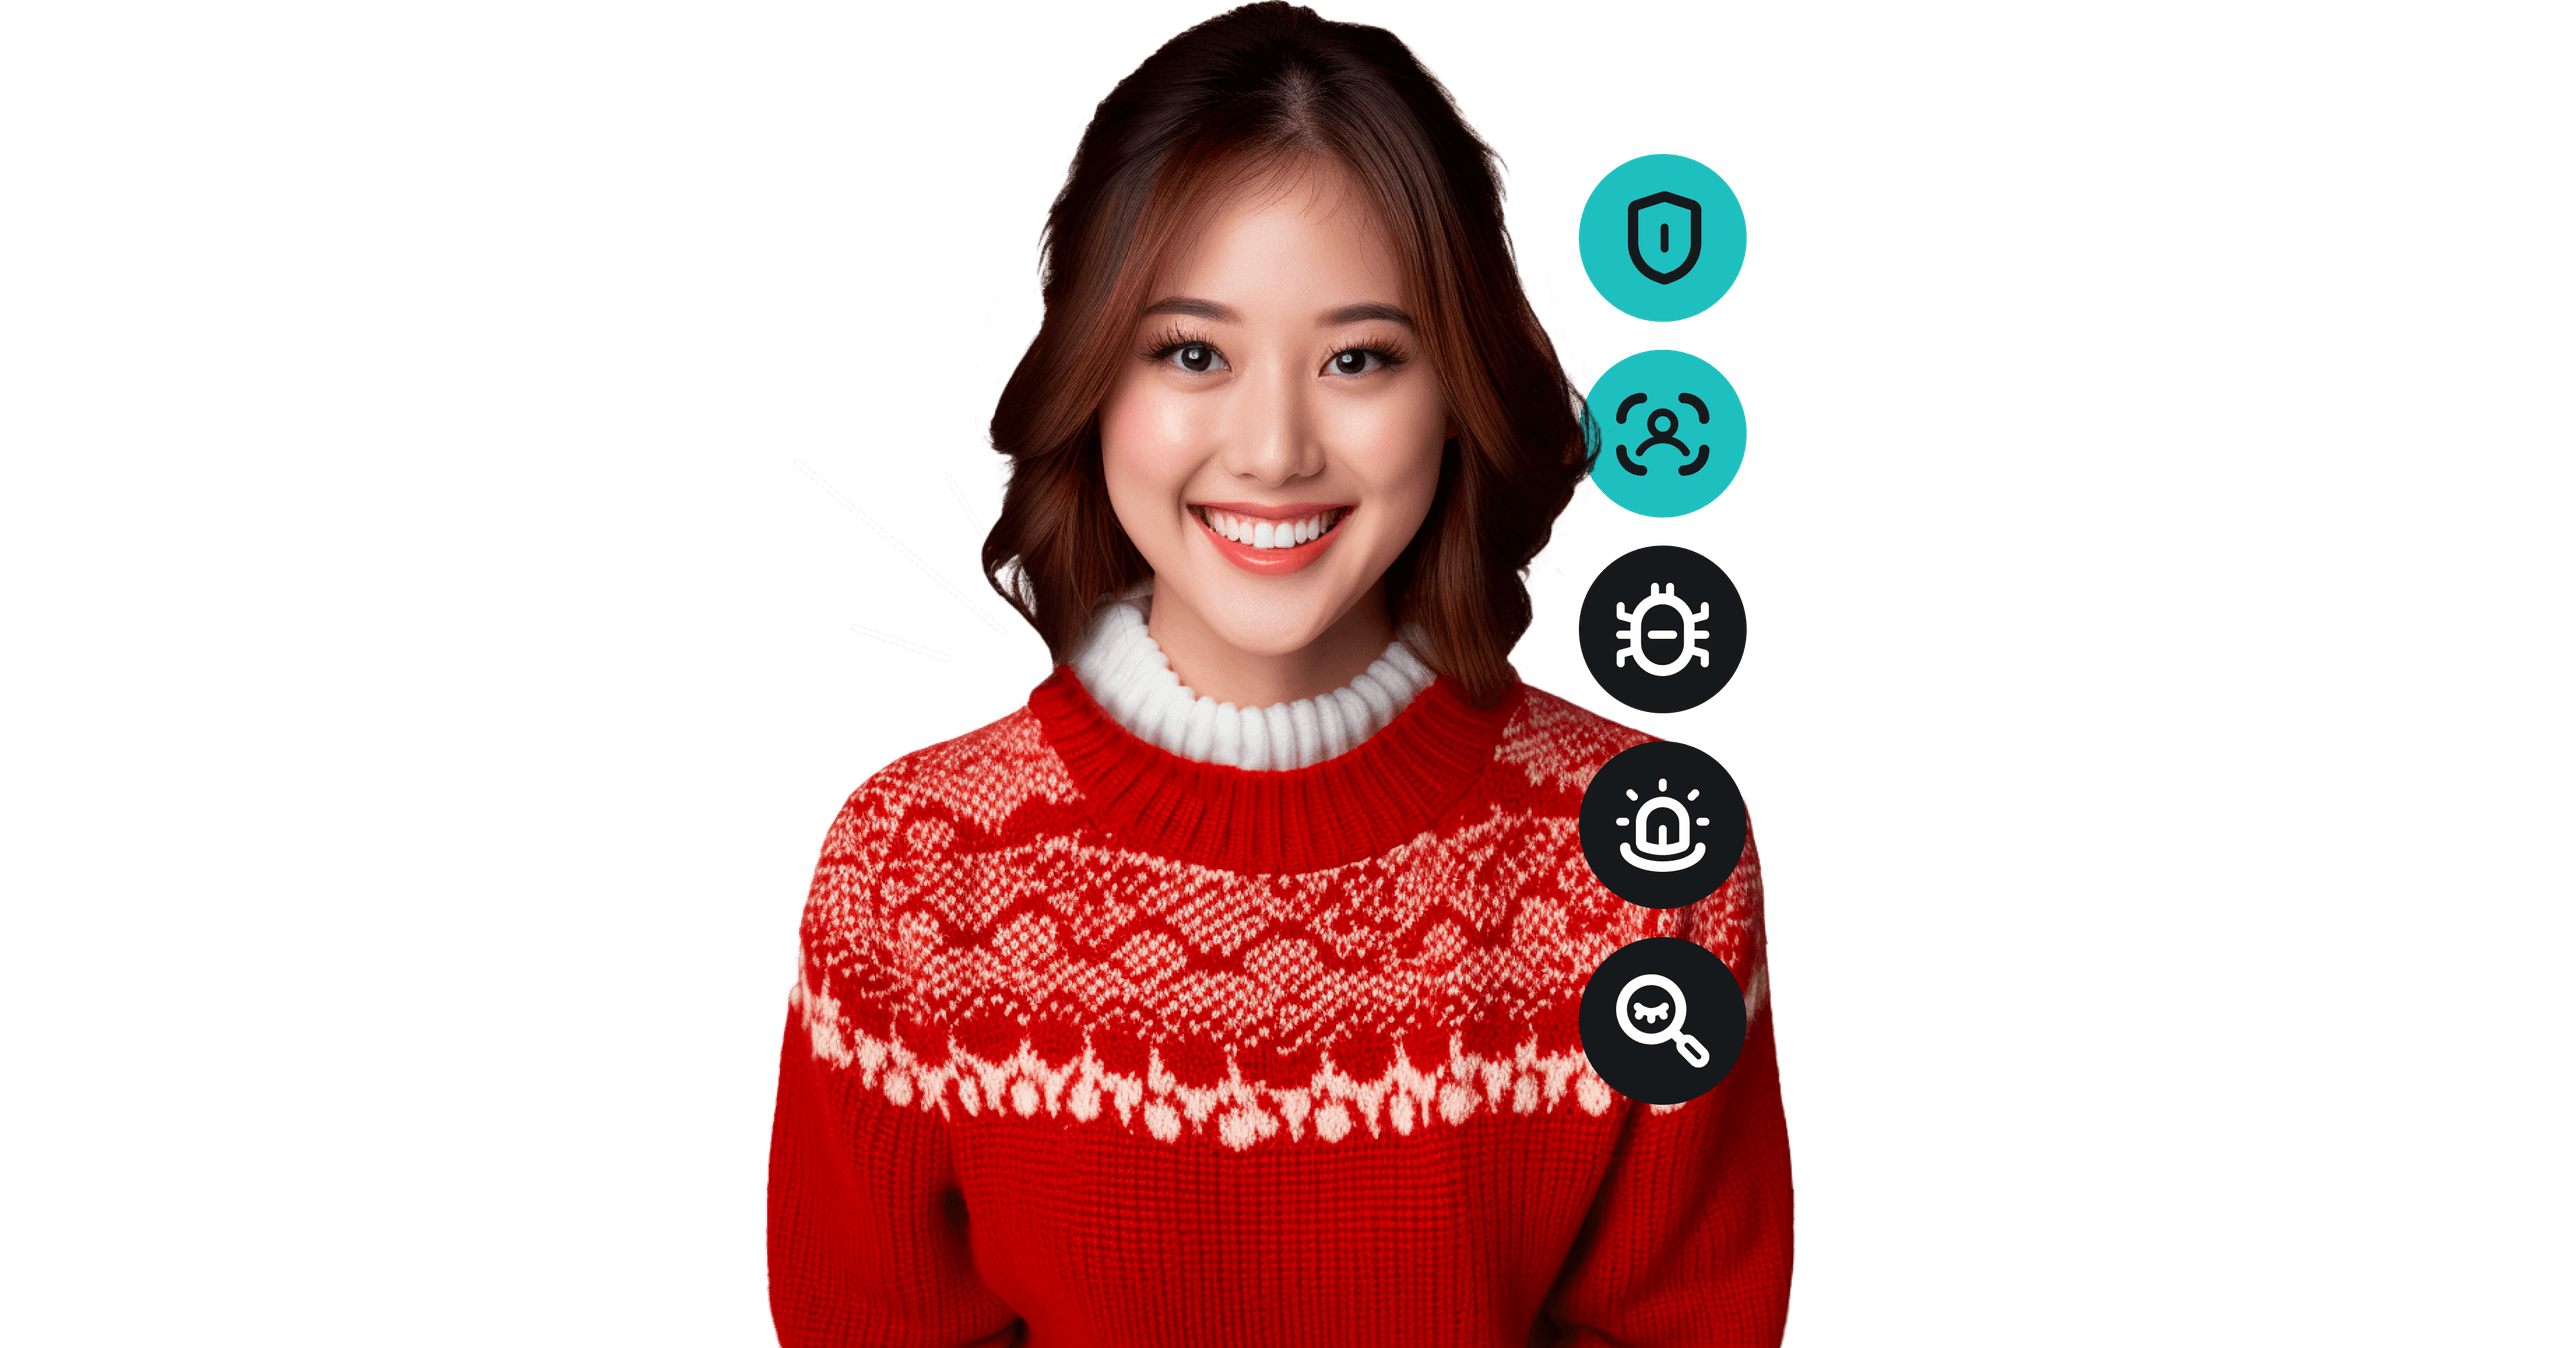 빨간 크리스마스 스웨터를 입은 미소 짓는 여자.